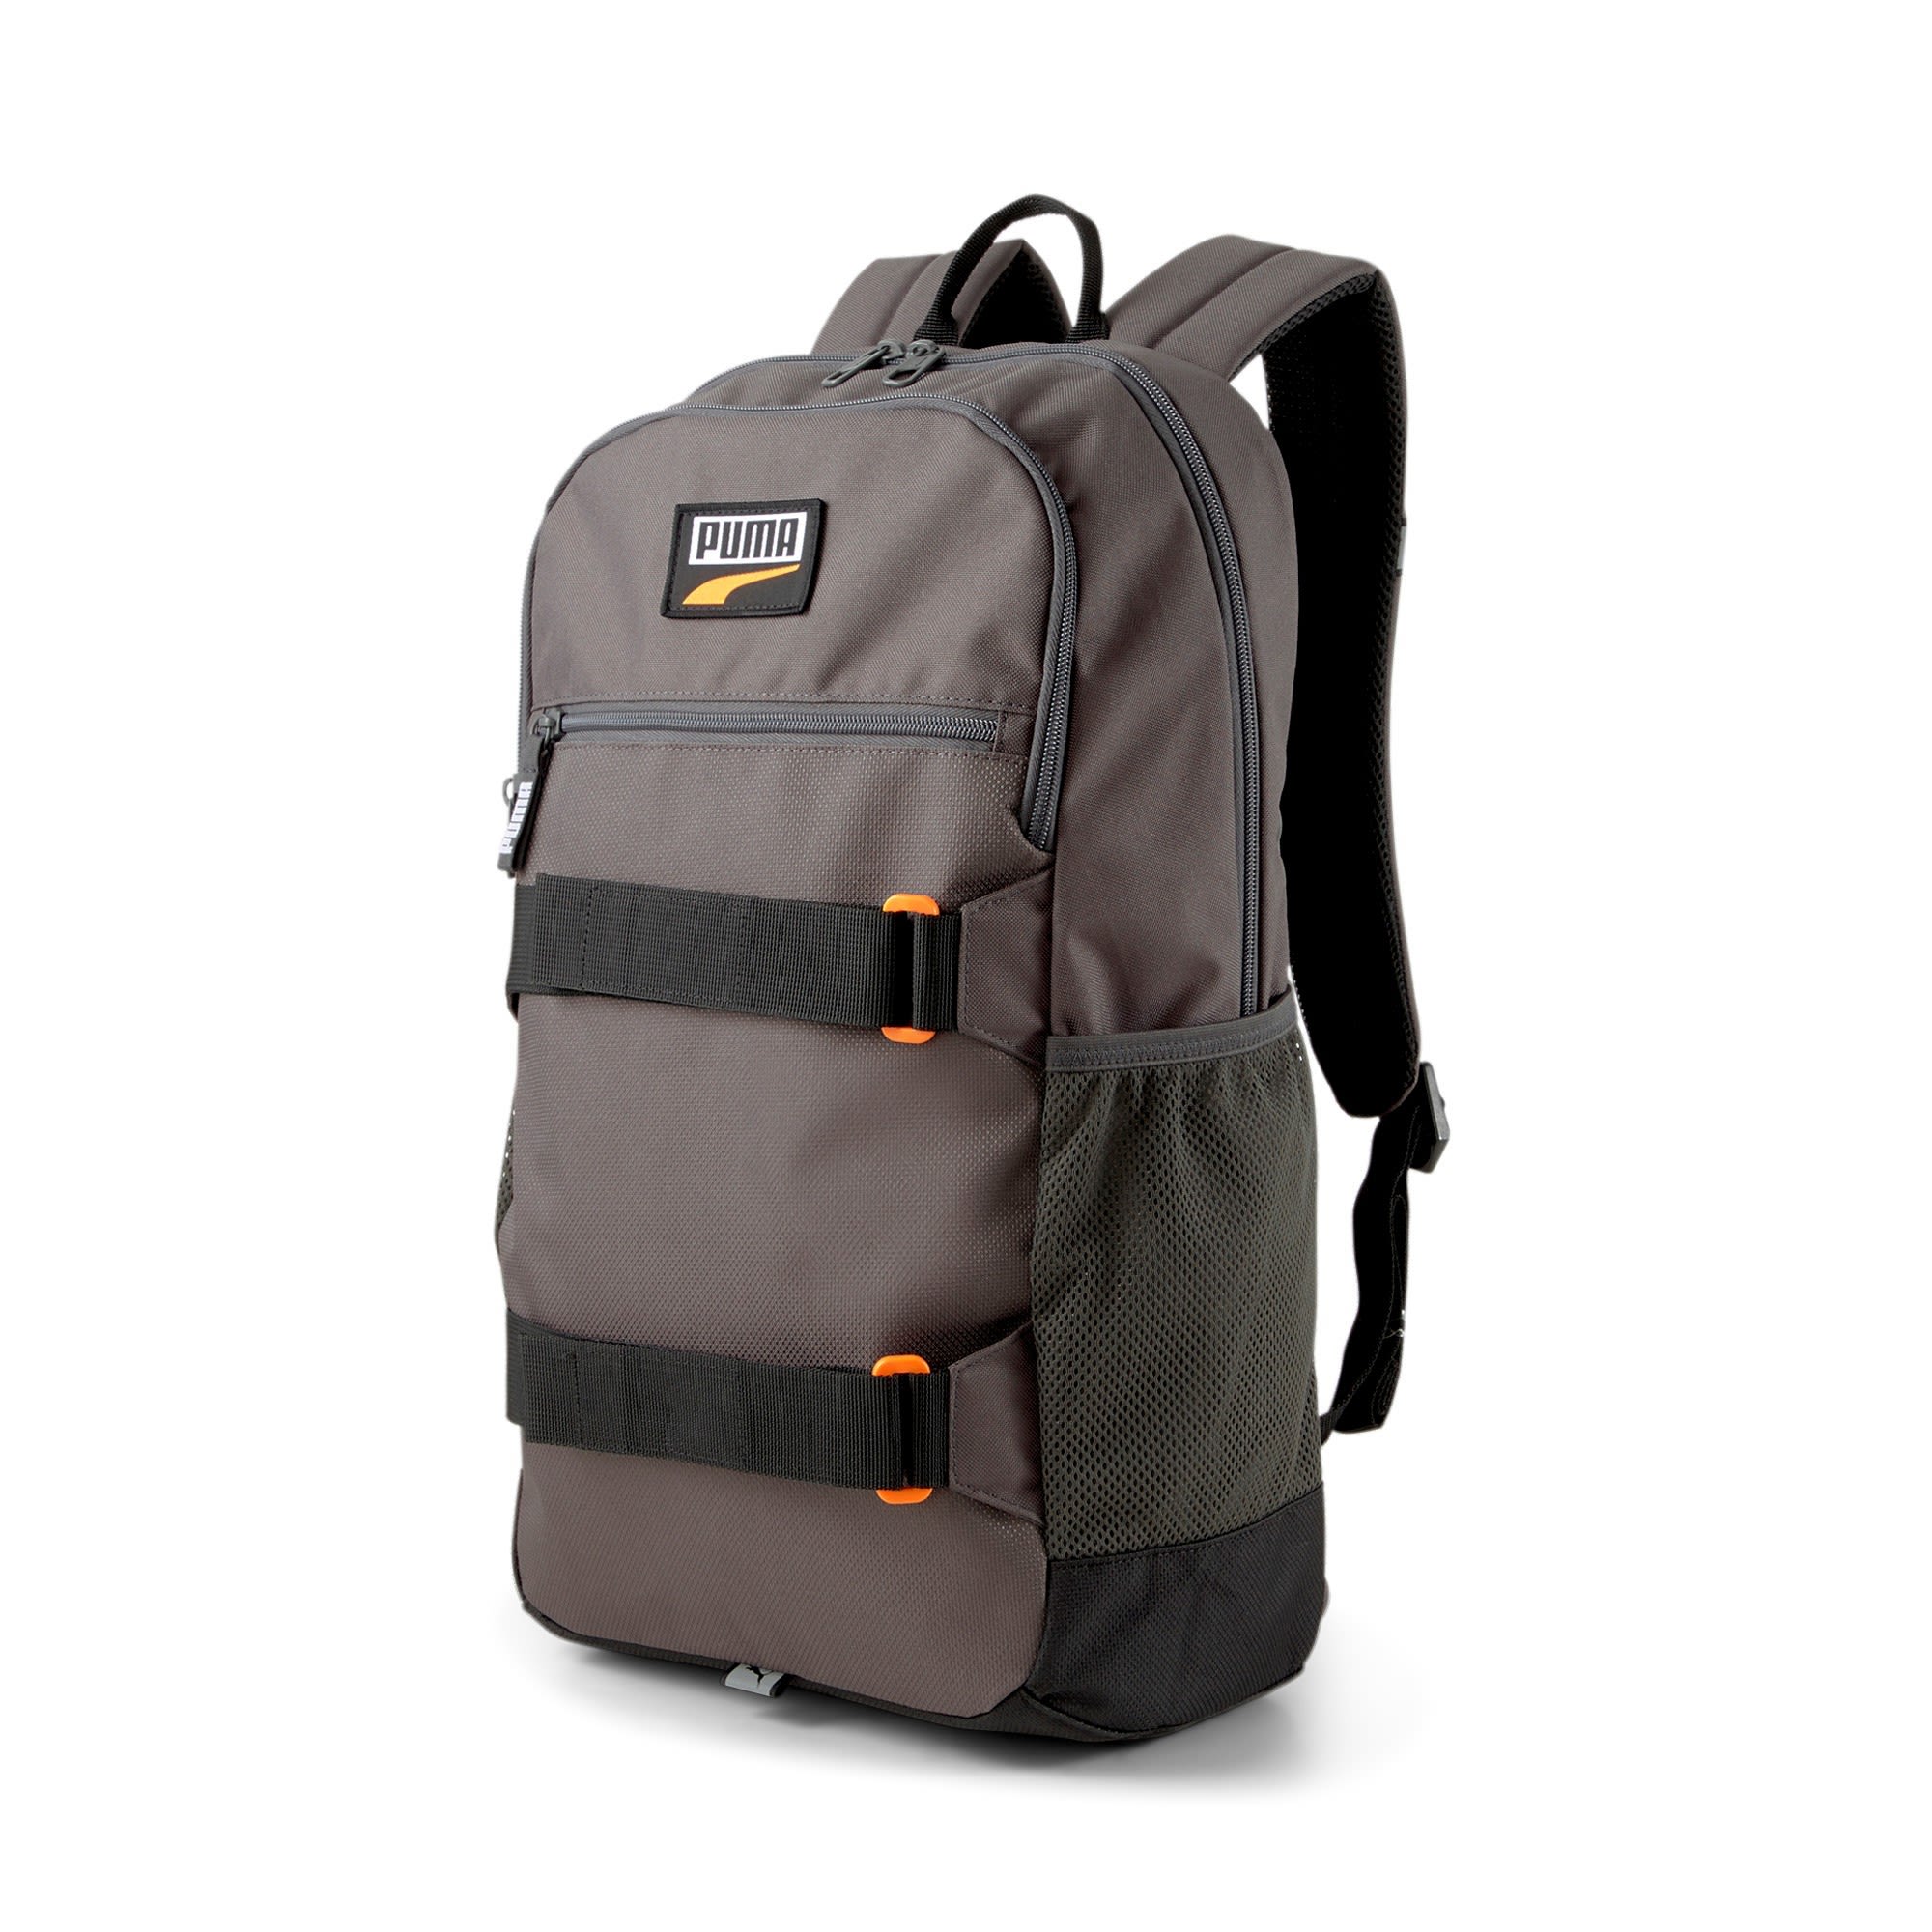 Puma Deck Backpack Grau- Daypacks- Grsse One Size - Farbe Dark Shadow unter Puma